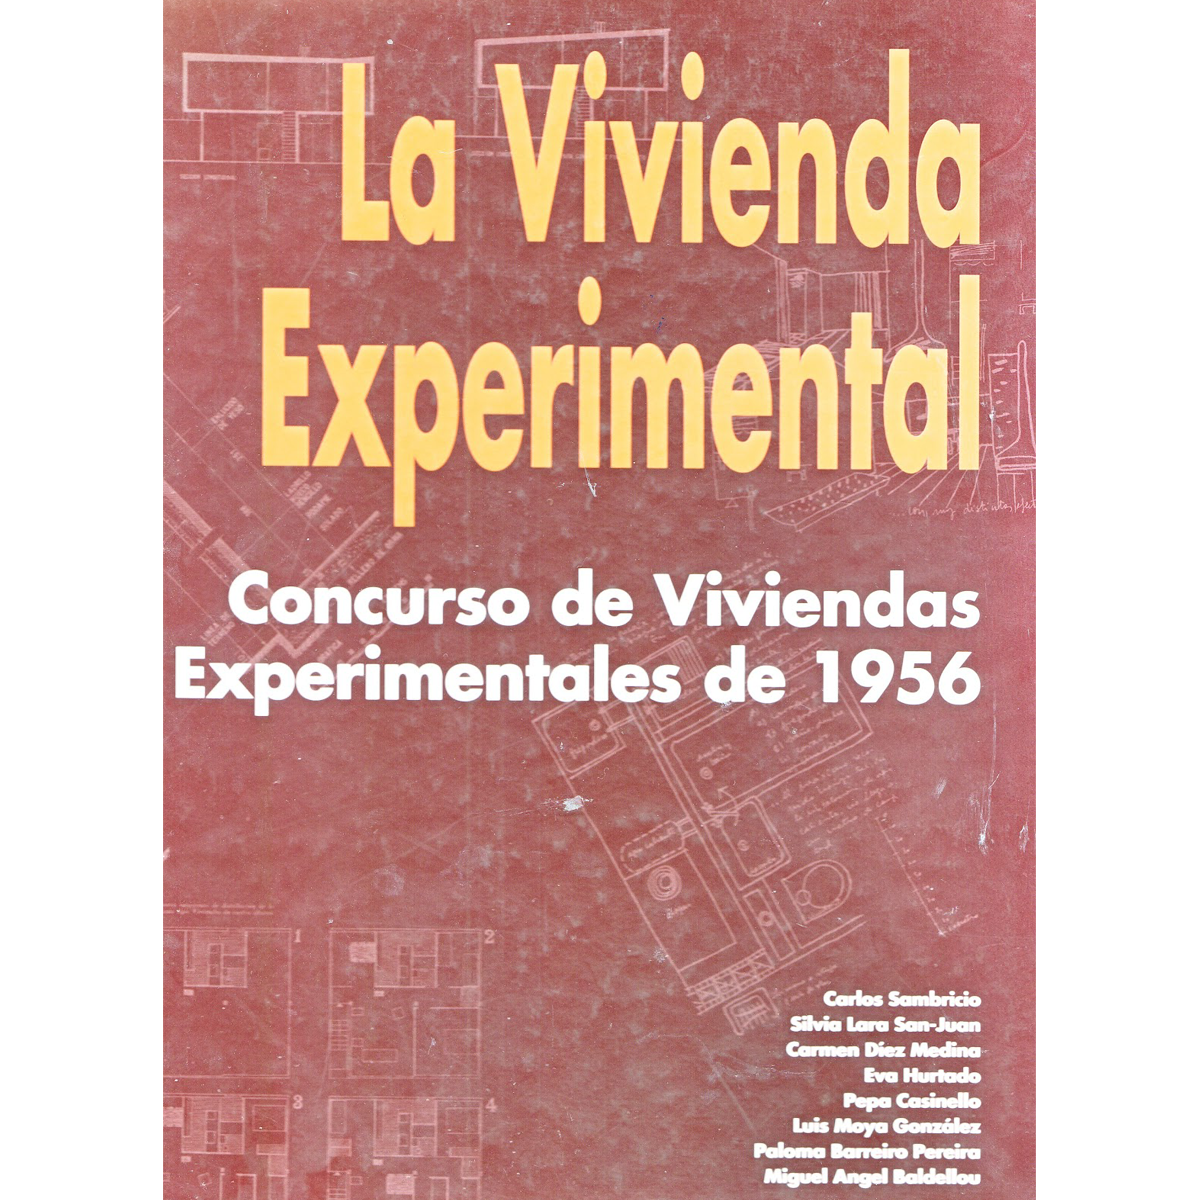 Concurso de viviendas experimentales de 1956